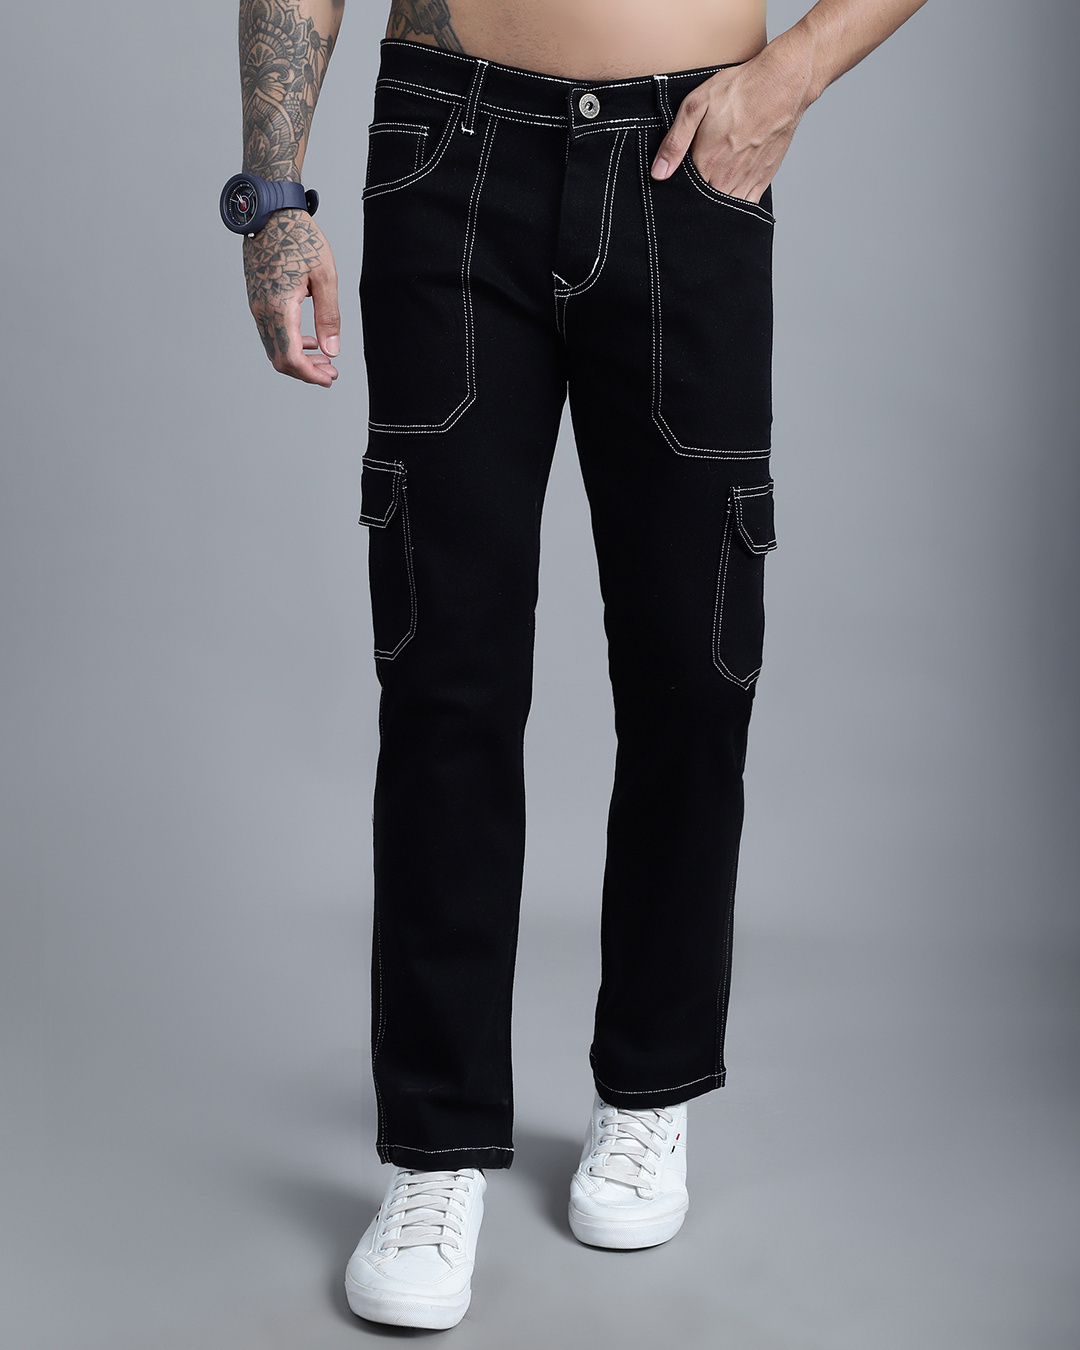 Buy Men's Black Cargo Jeans Online at Bewakoof